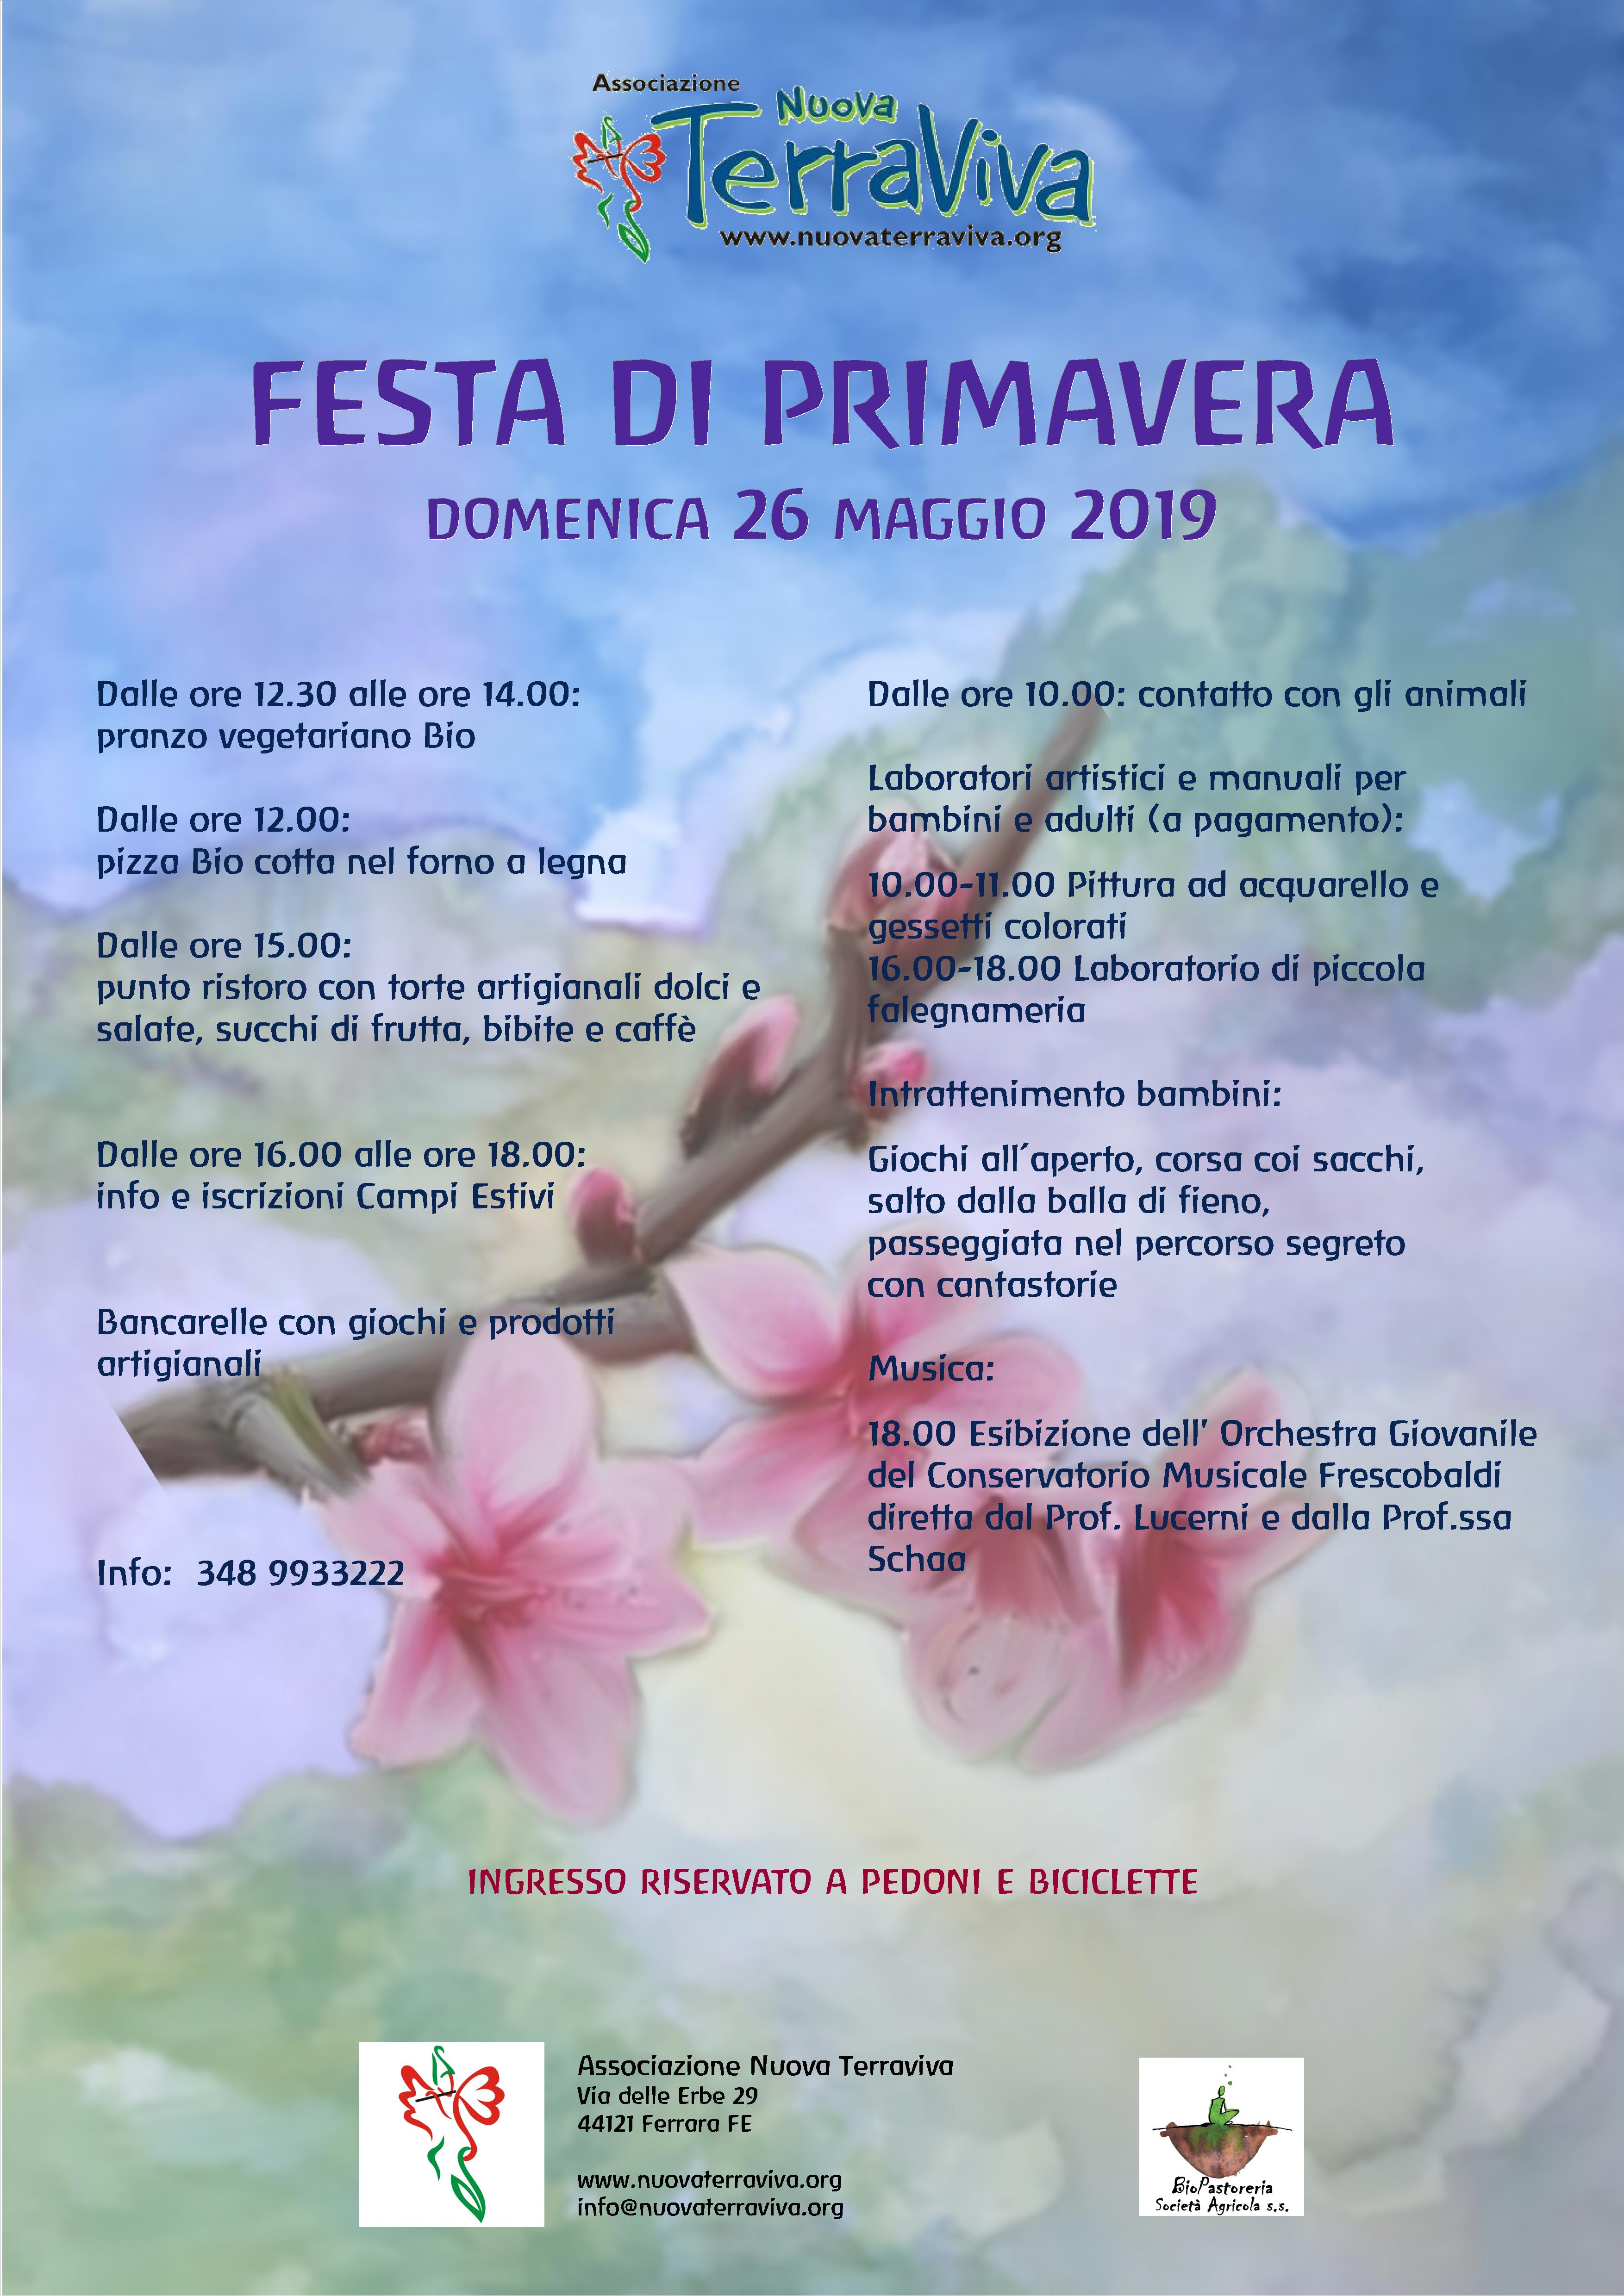 Festa di Primavera @ Associazione Nuova Terraviva | Ferrara | Emilia-Romagna | Italia